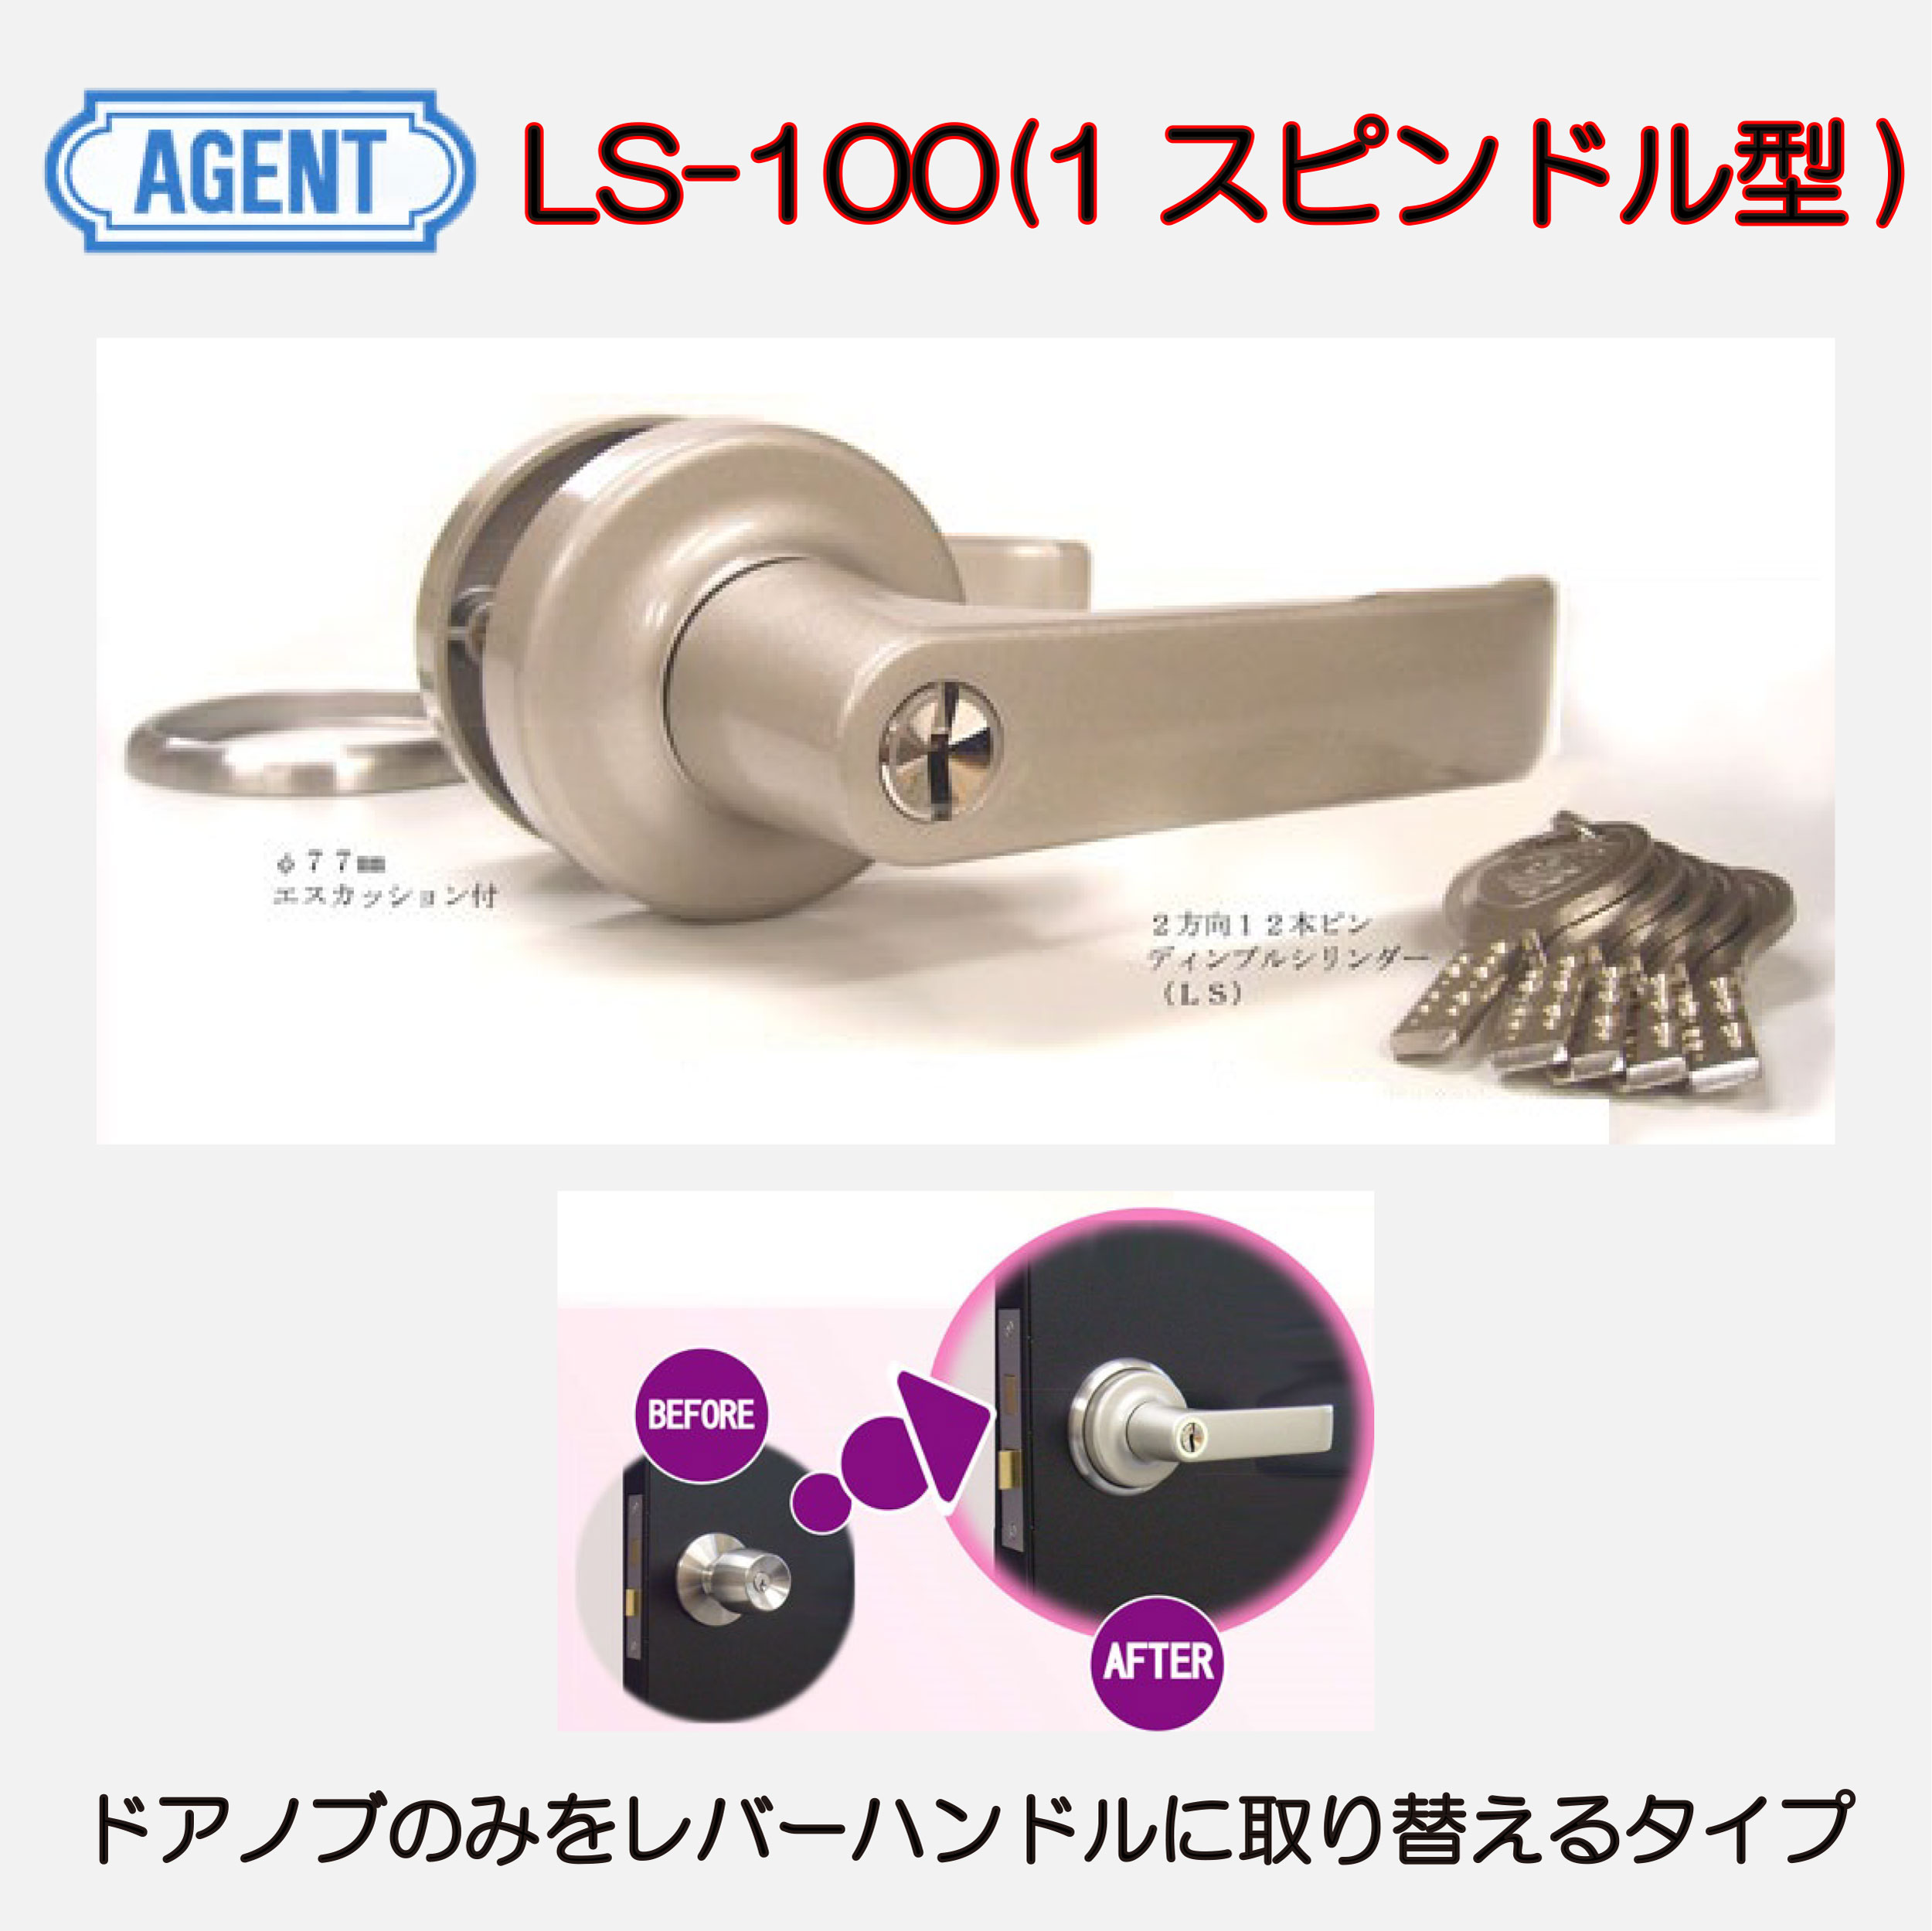 AGENT レバーハンドル取替錠 LS-1000-